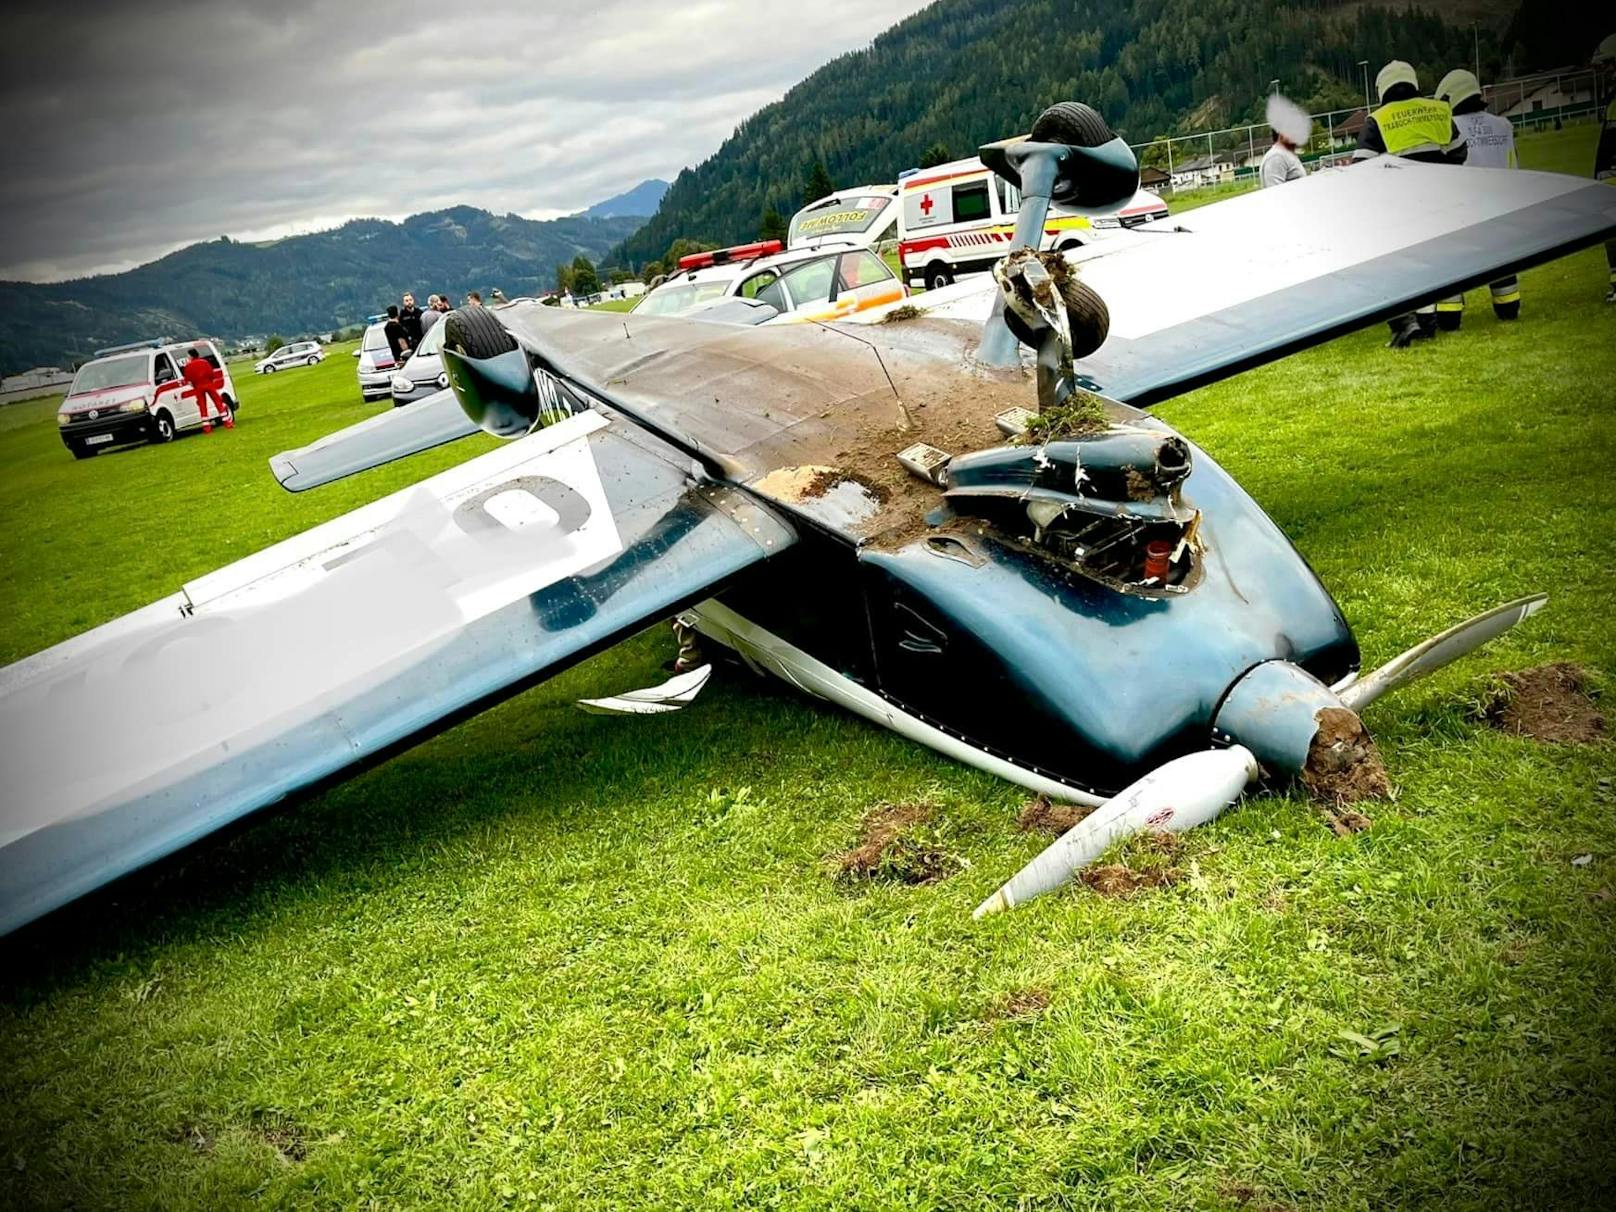 Am Flugplatz Timmersdorf kam es am 25. September zu einer spektakulären Bruchlandung samt Flugzeug-Überschlag. Der Pilot (66) musste ins Spital, der zweite Insasse (41) blieb unverletzt.